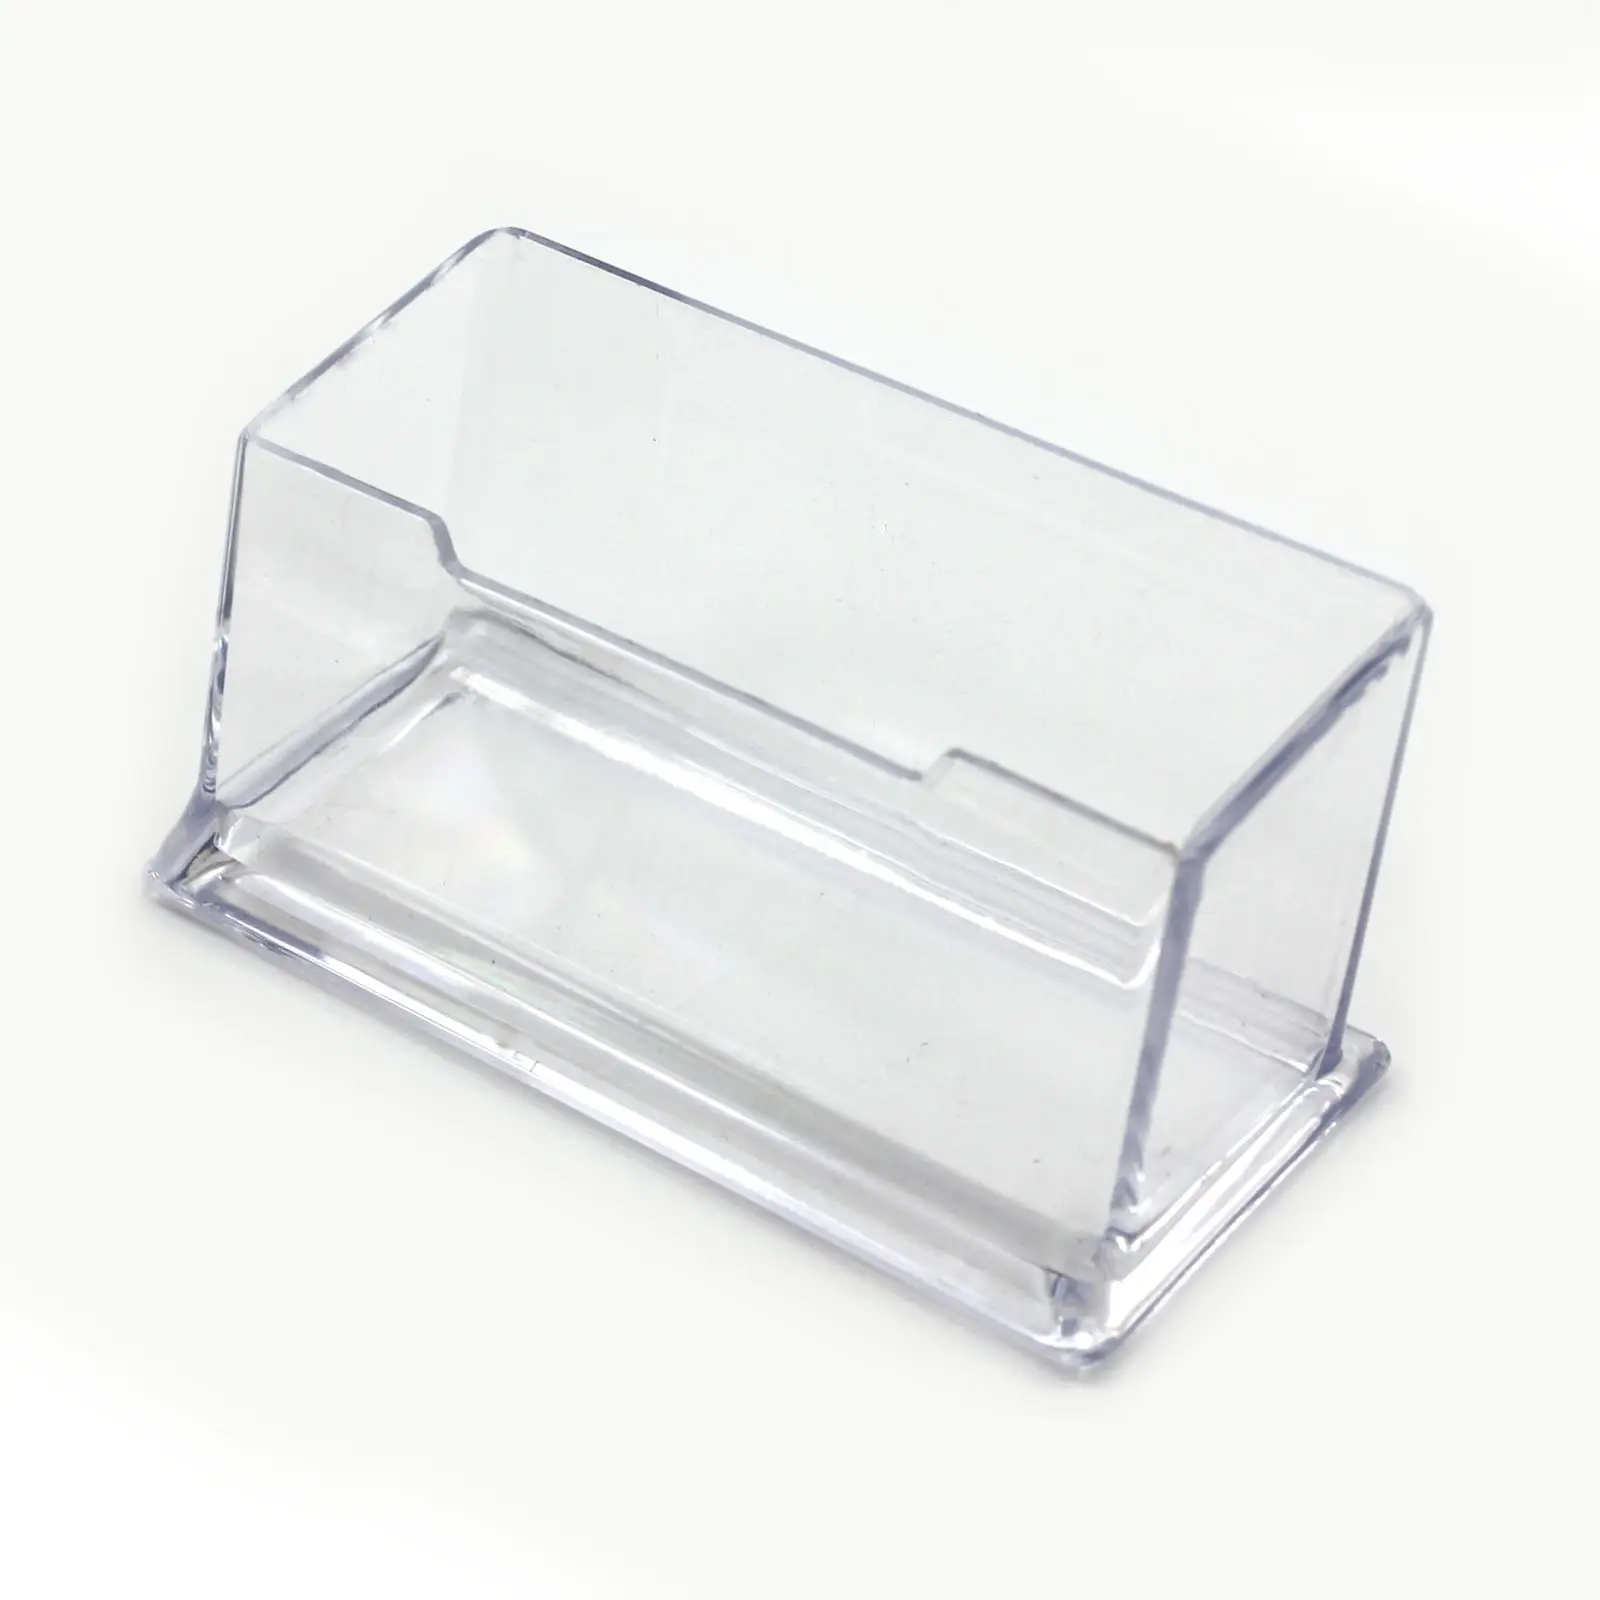 새로운 명확한 책상 선반 상자 저장 진열대 아크릴 플라스틱 투명한 탁상용 명함 홀더